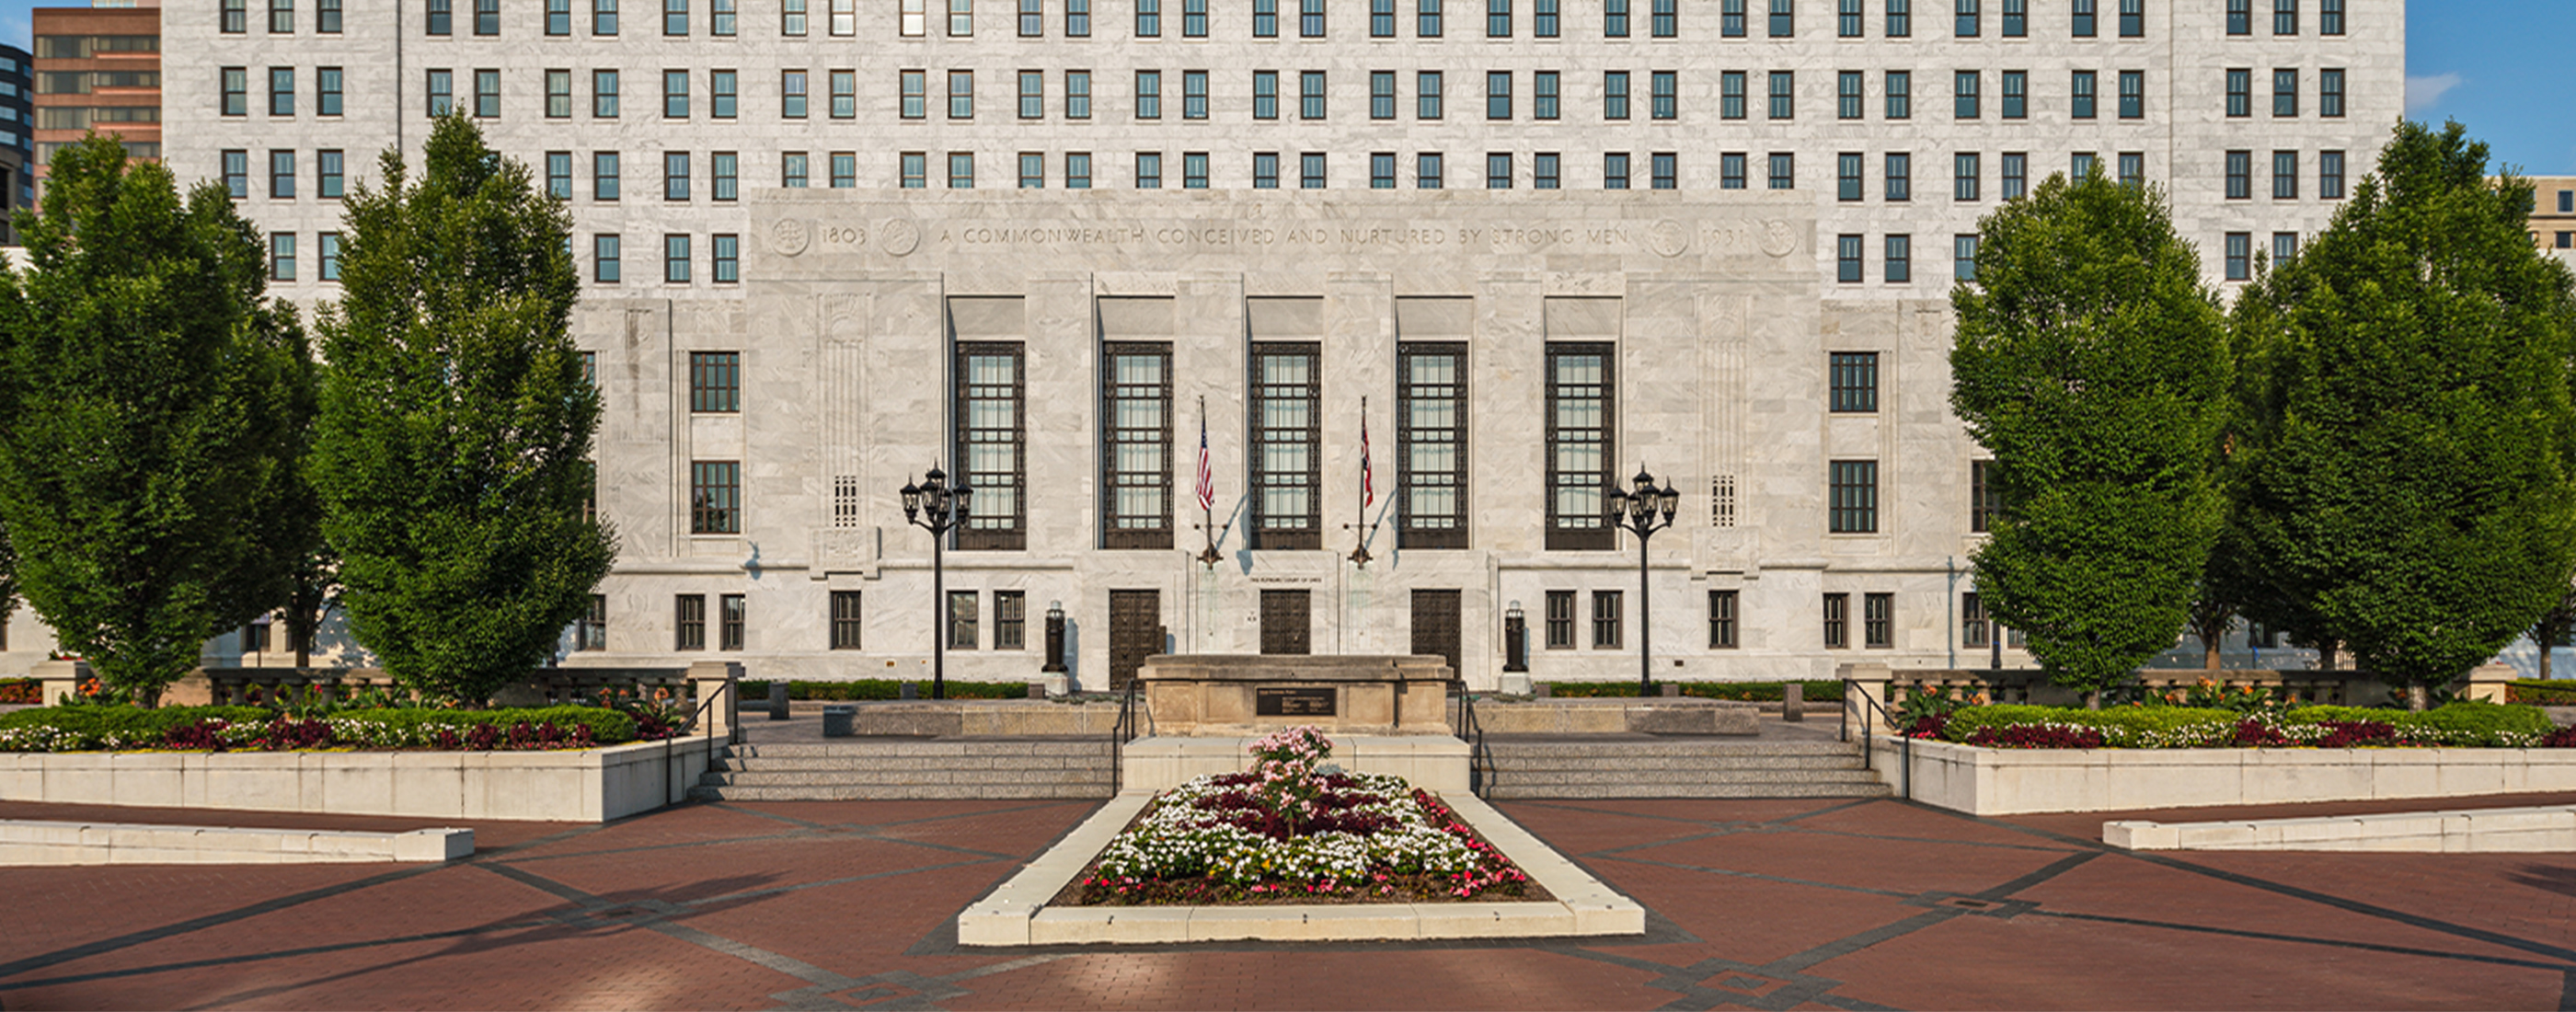 The Supreme Court of Ohio Exterior Repairs OHM Advisors